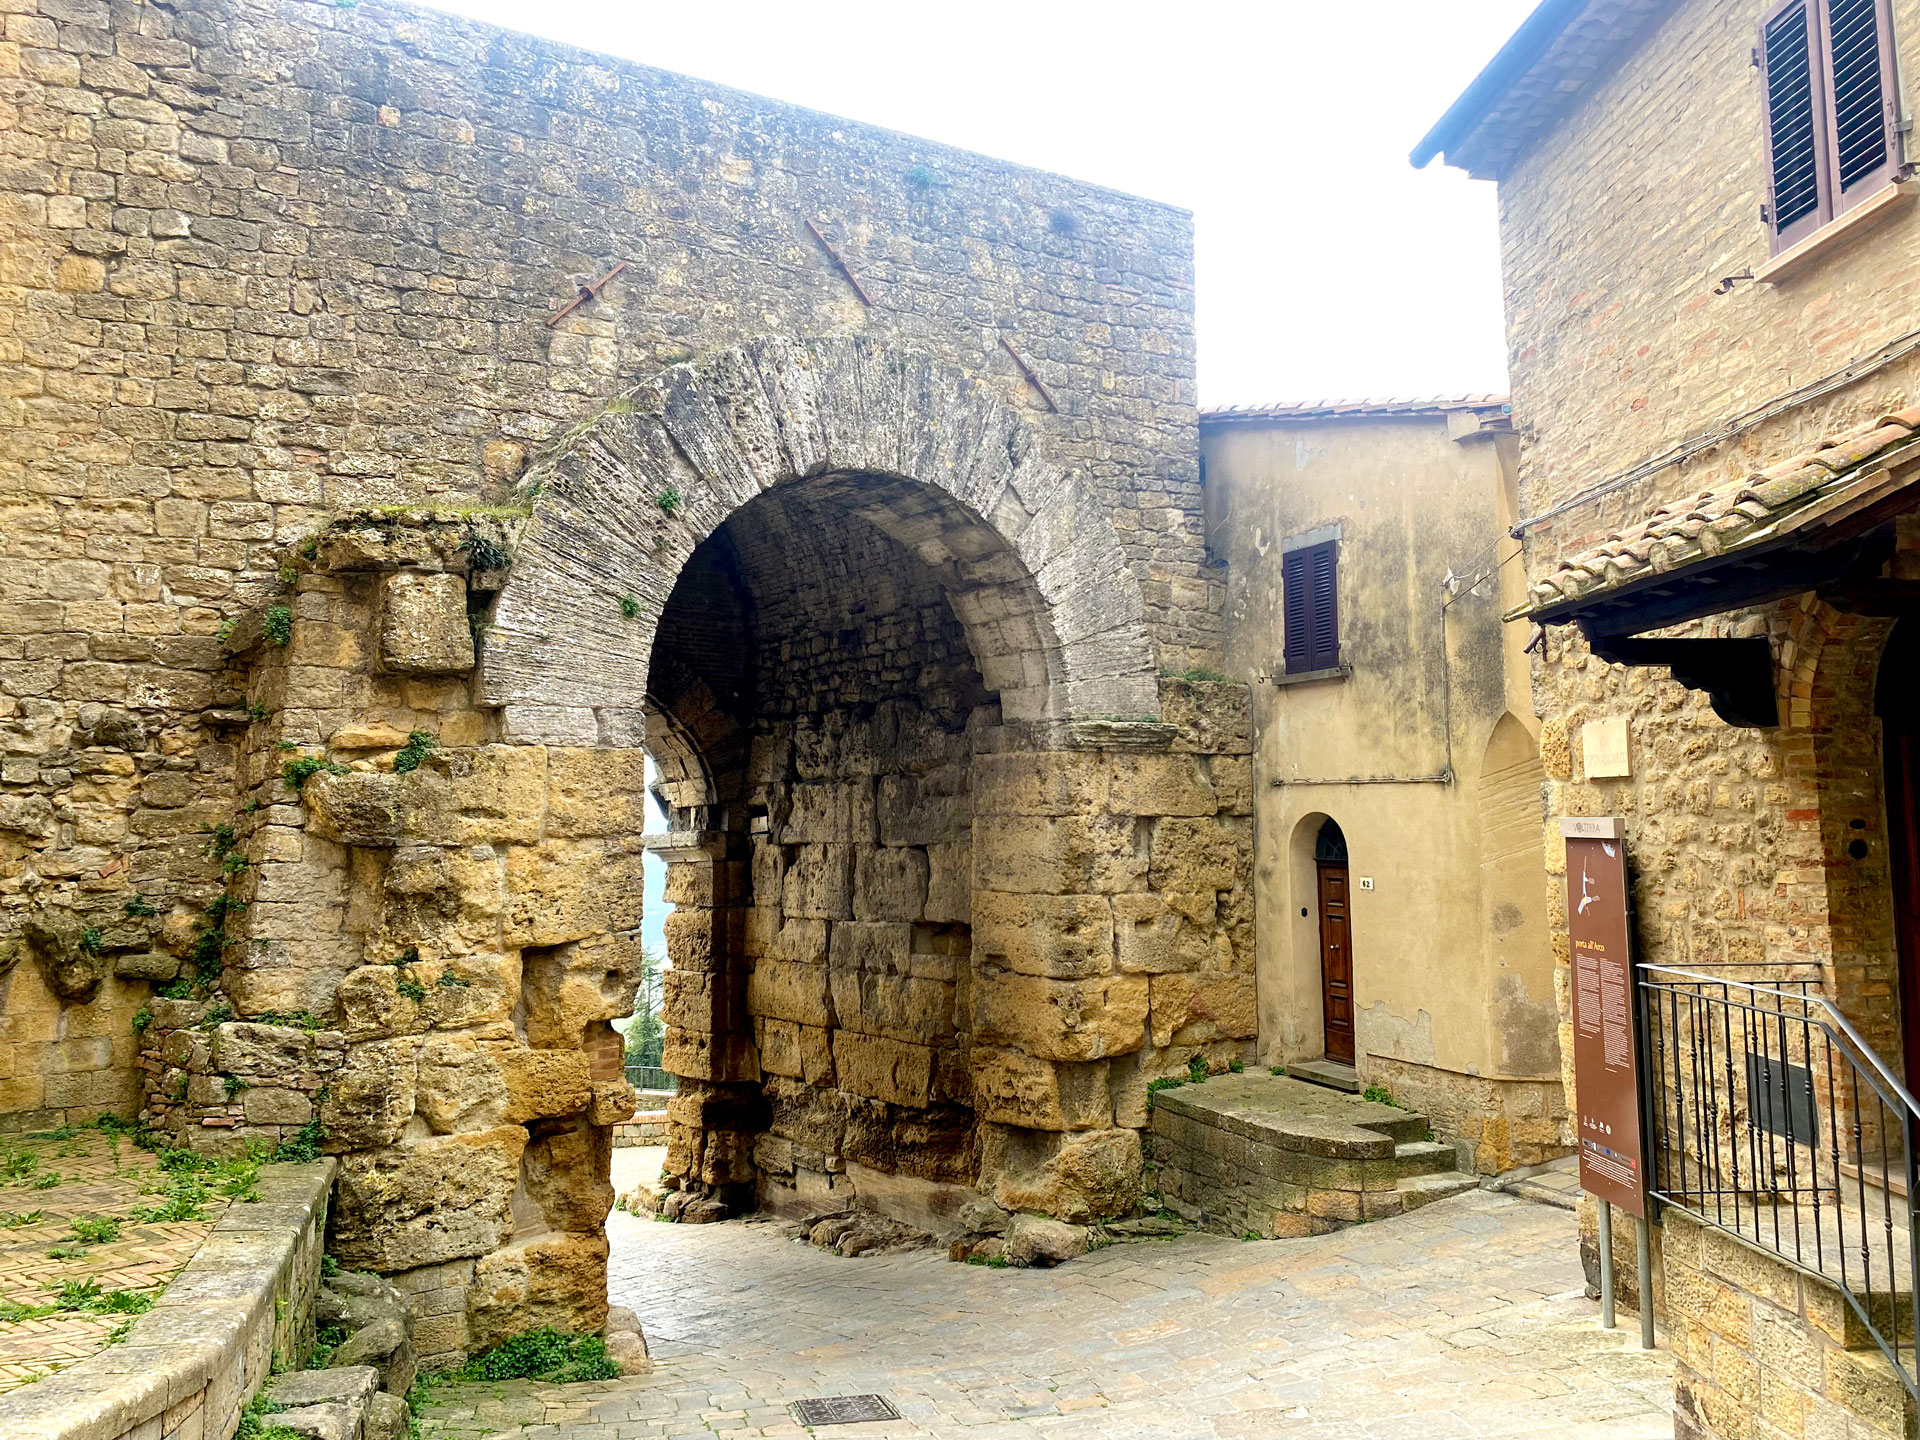 Borghi di Toscana, Val di Cecina, Volterra Porta all'arco